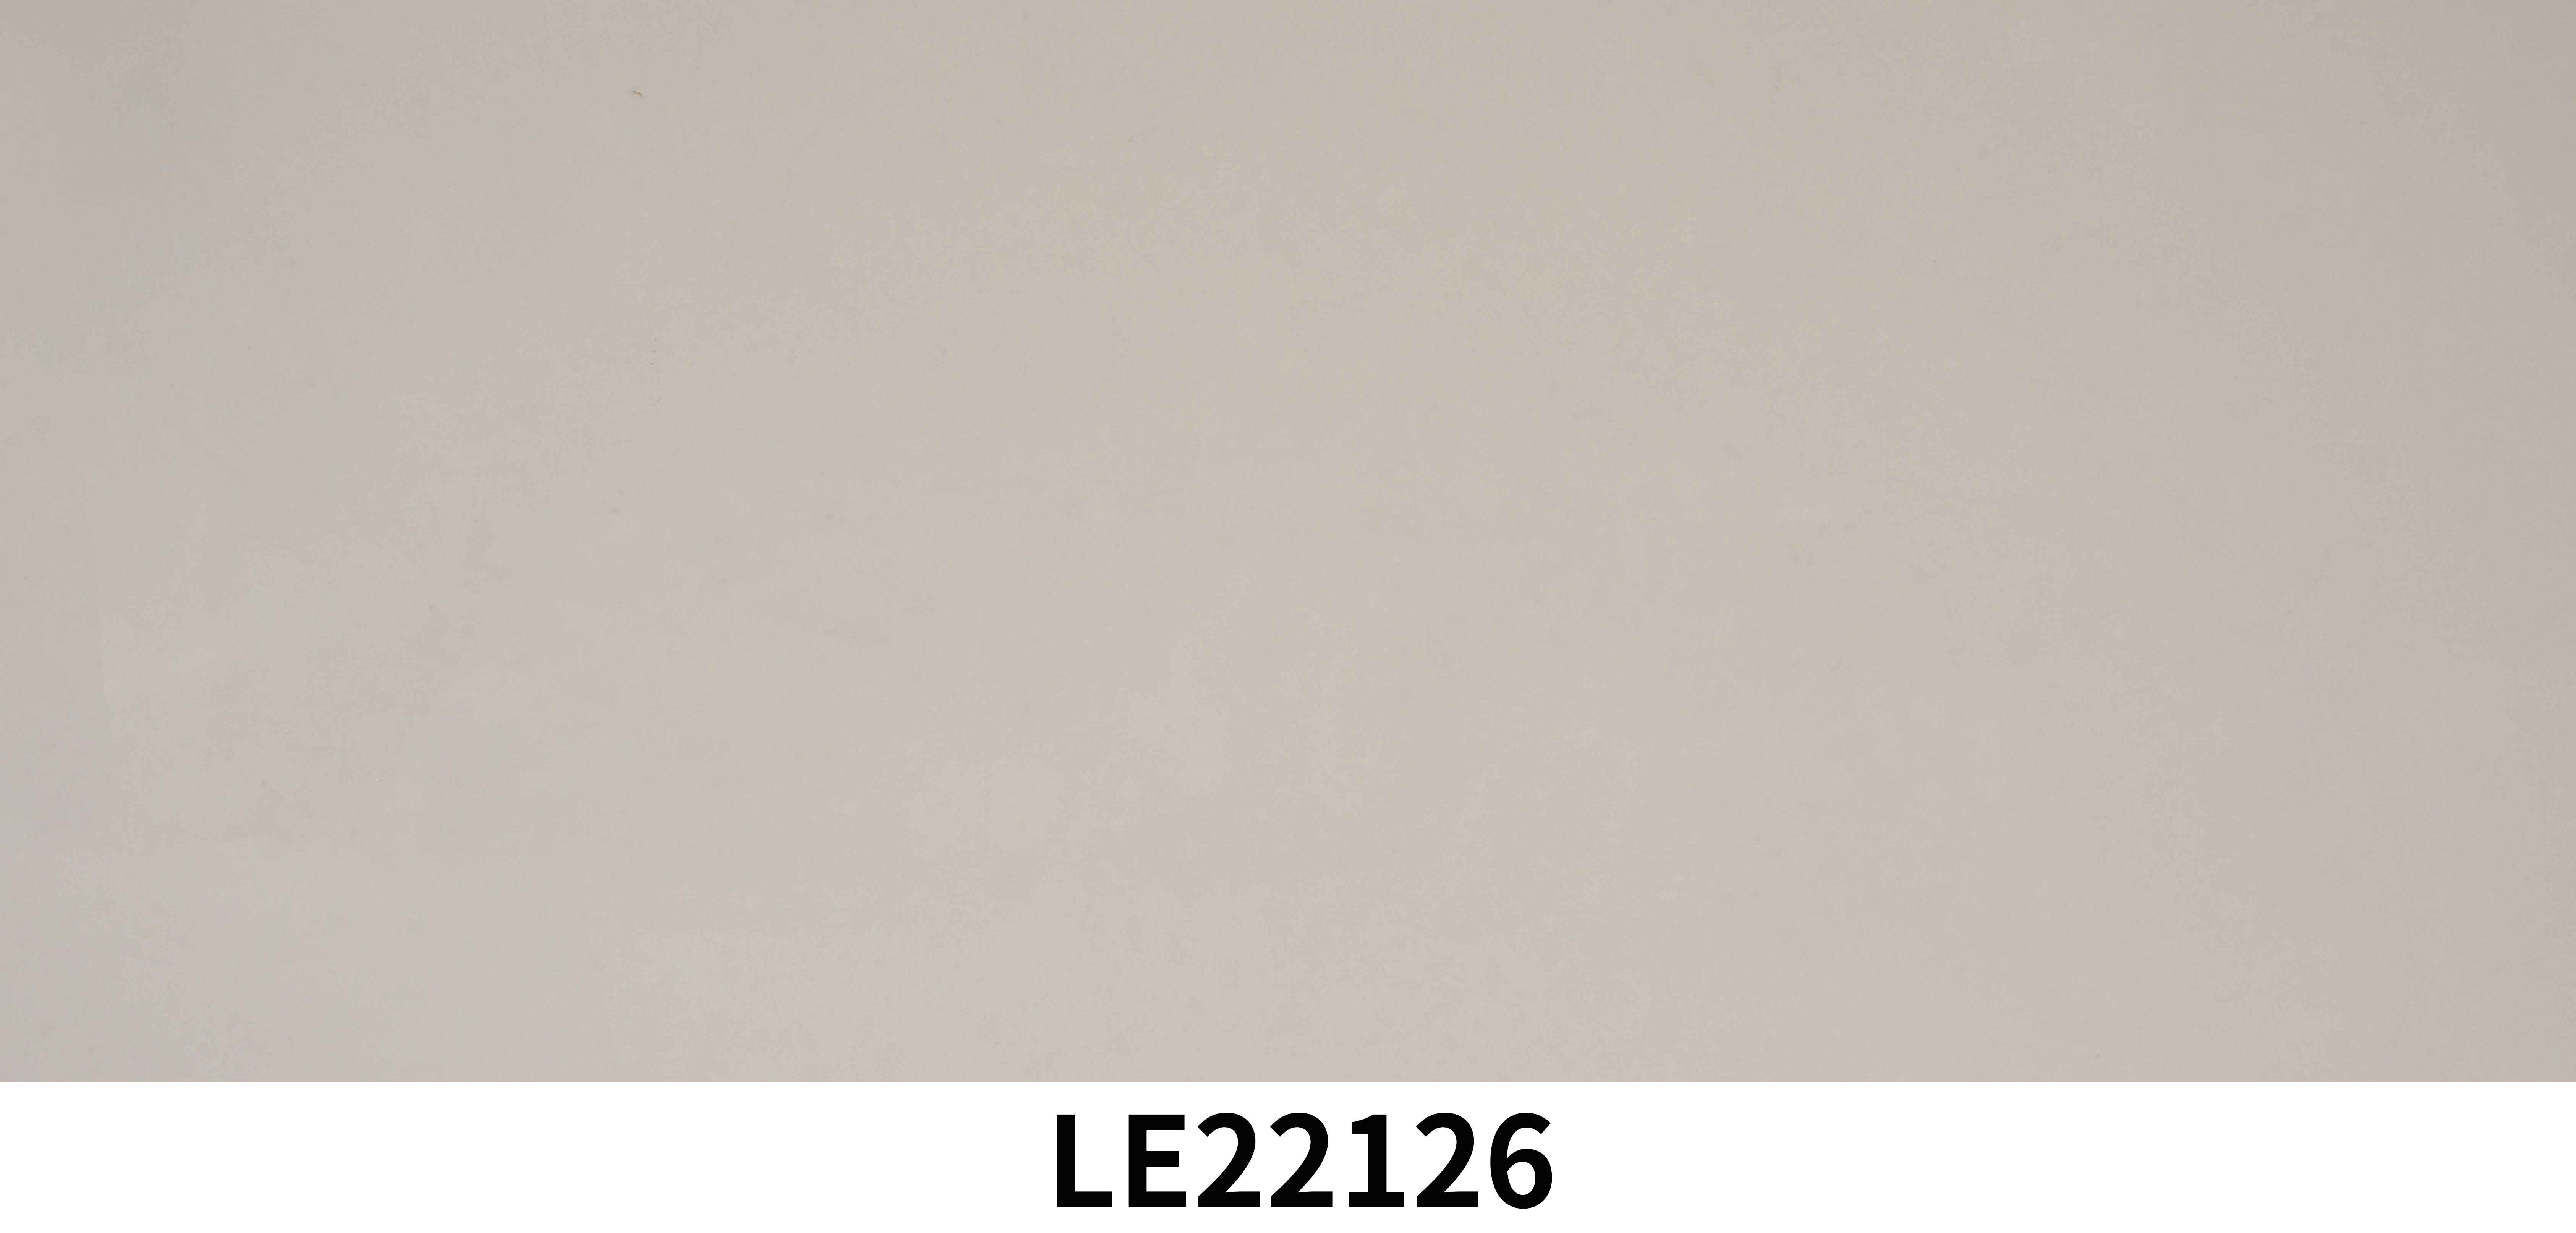 LE22126